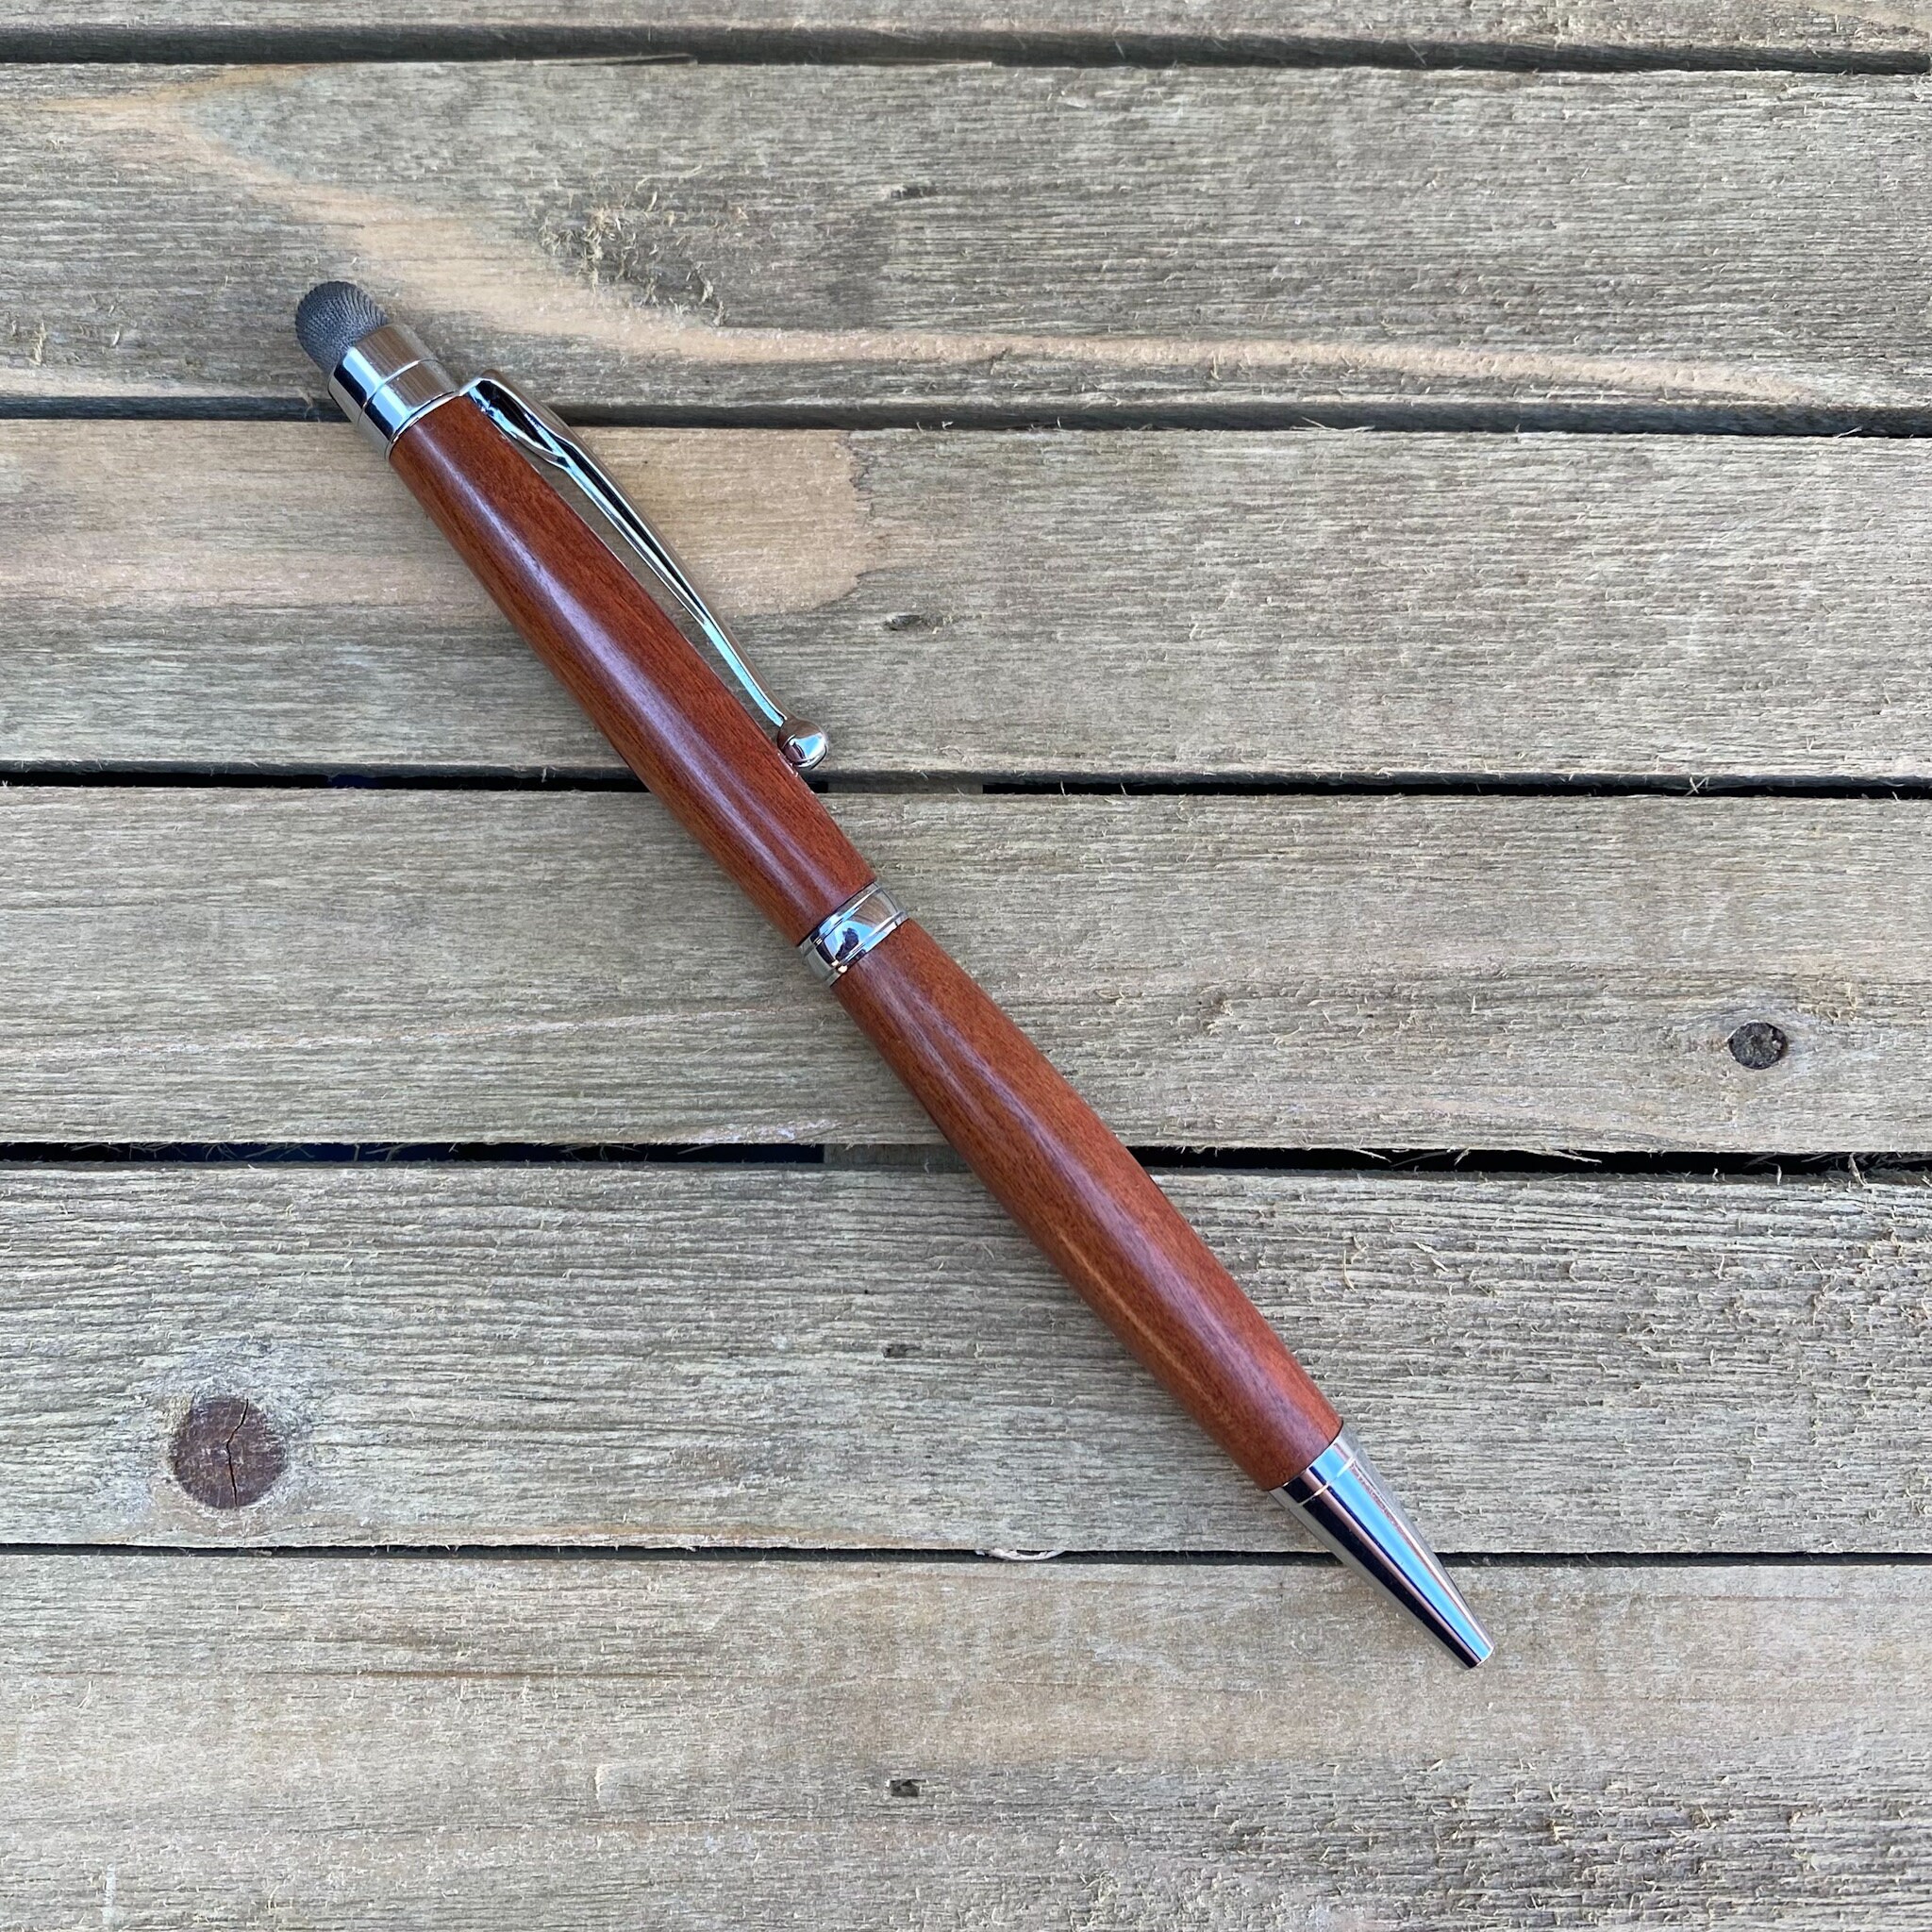 Slimline Turned Wood Pens